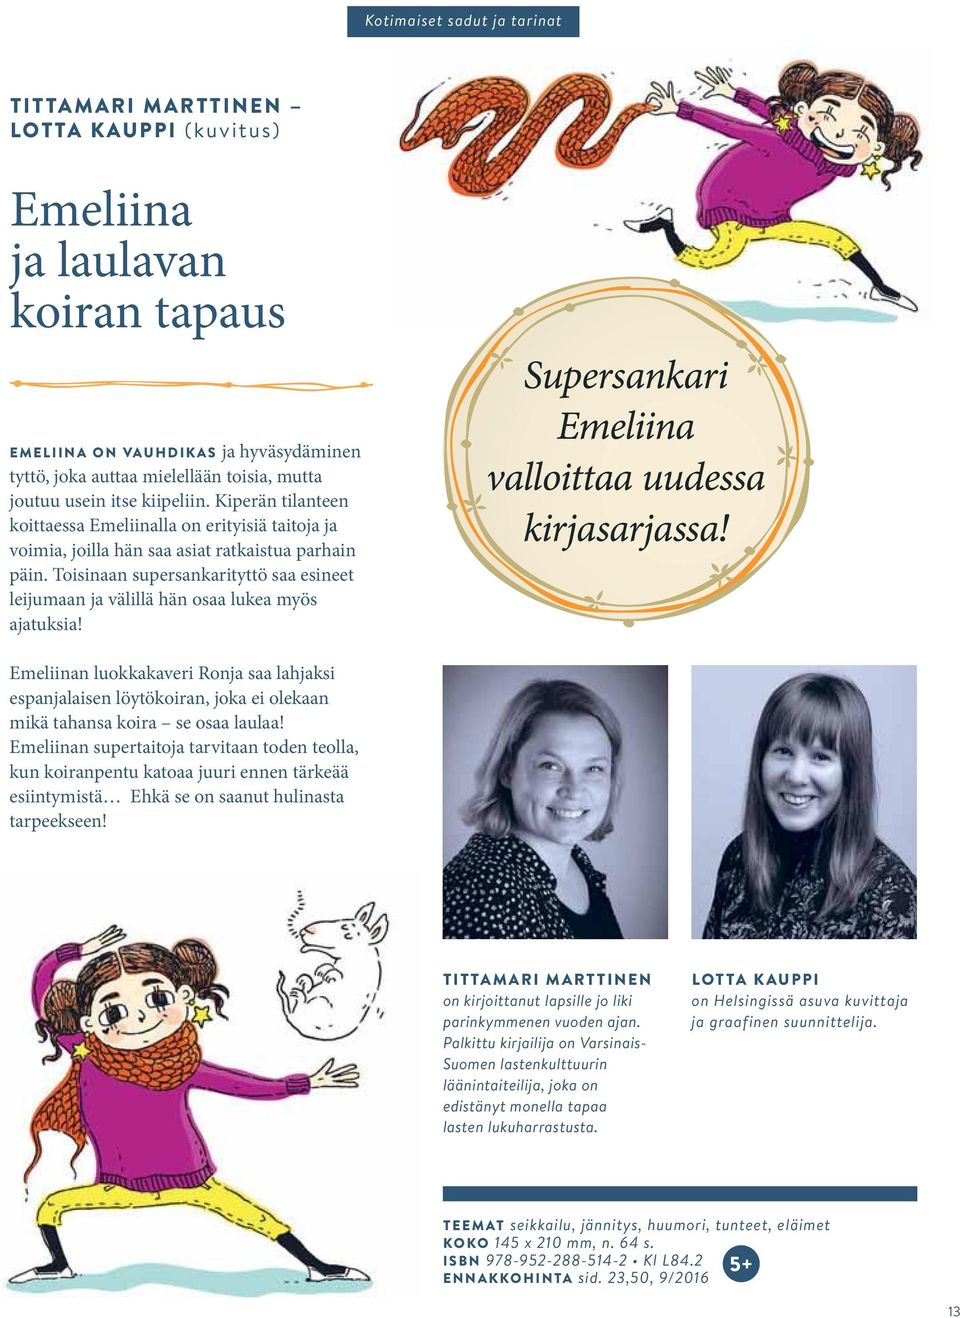 Palkittu kirjailija on Varsinais- Suomen lastenkulttuurin läänintaiteilija, joka on edistänyt monella tapaa lasten lukuharrastusta.